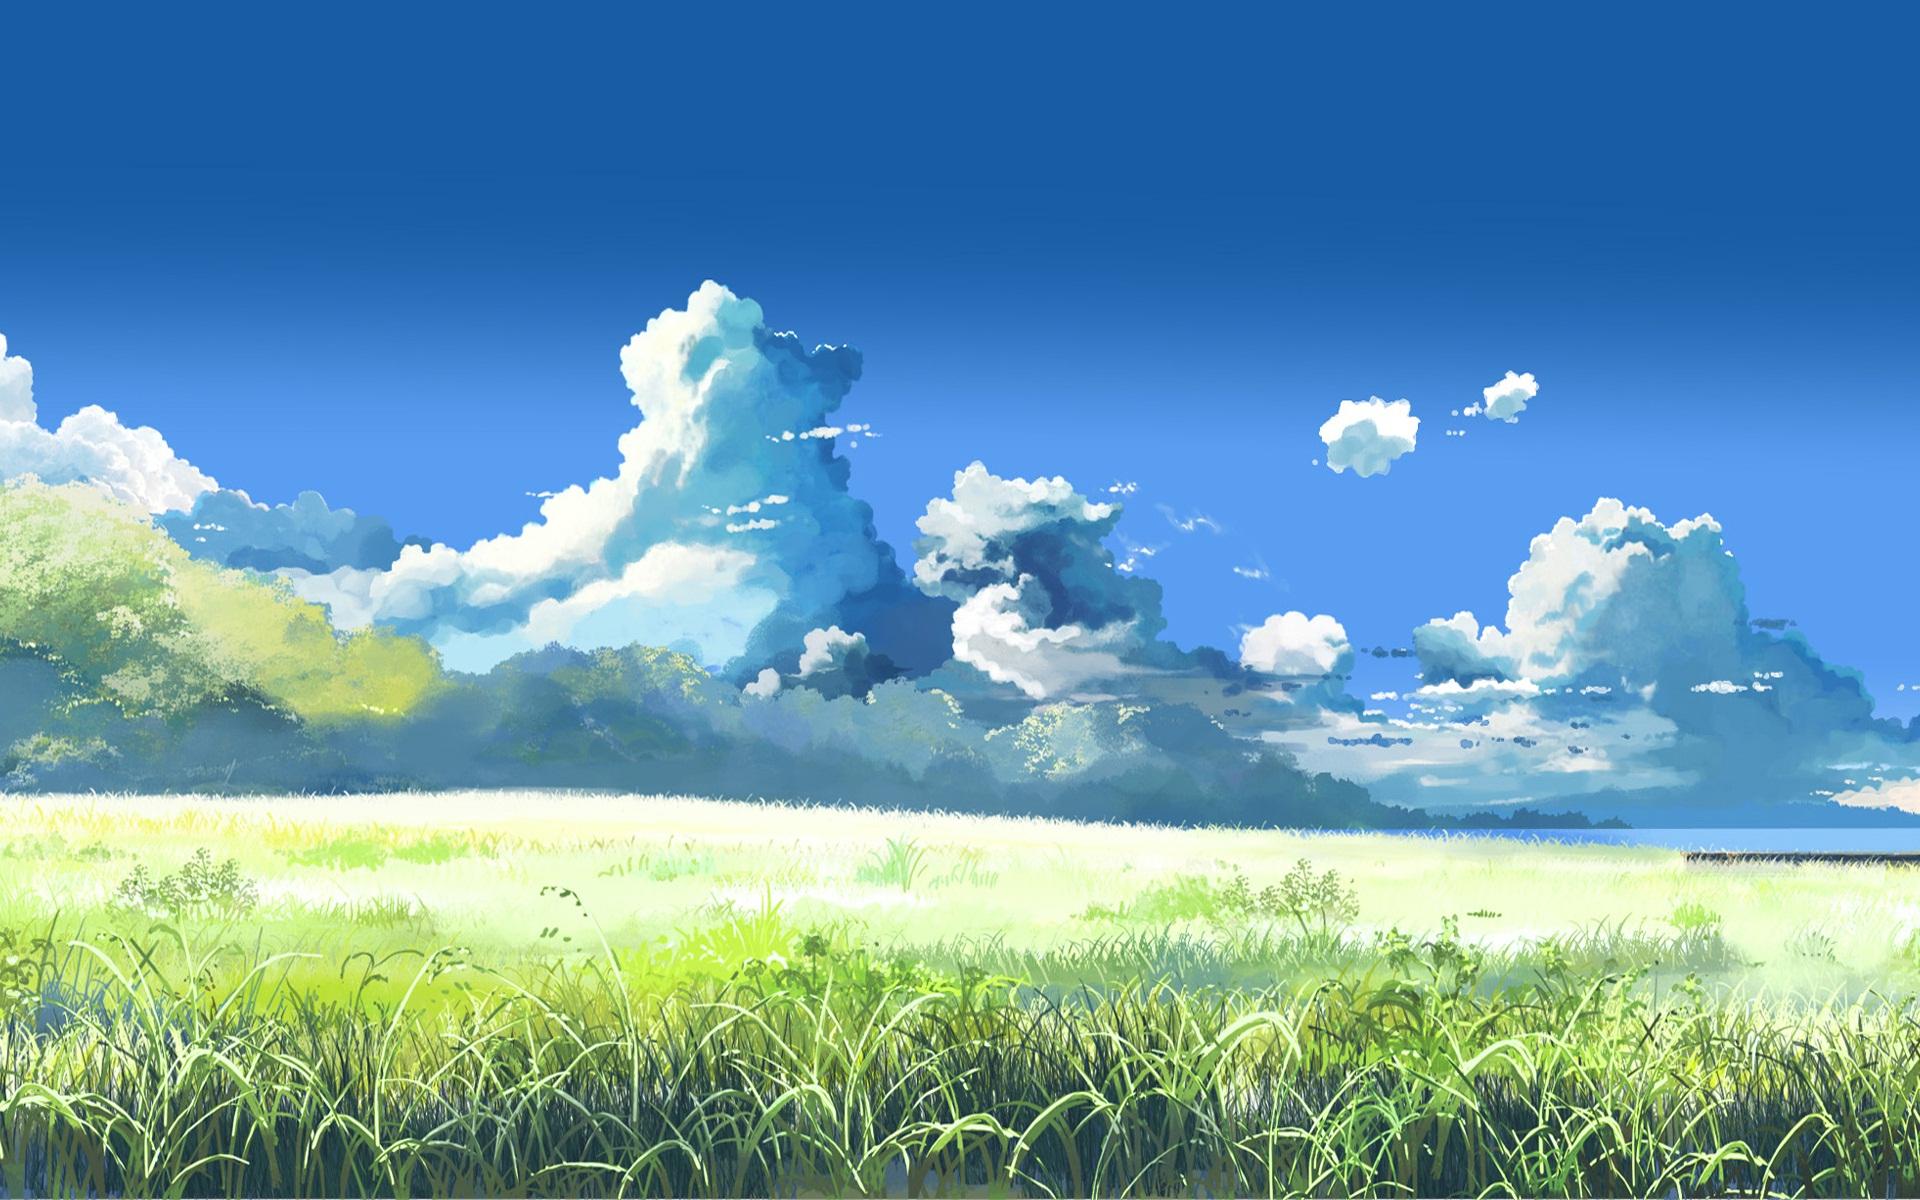 ArtStation - anime grass